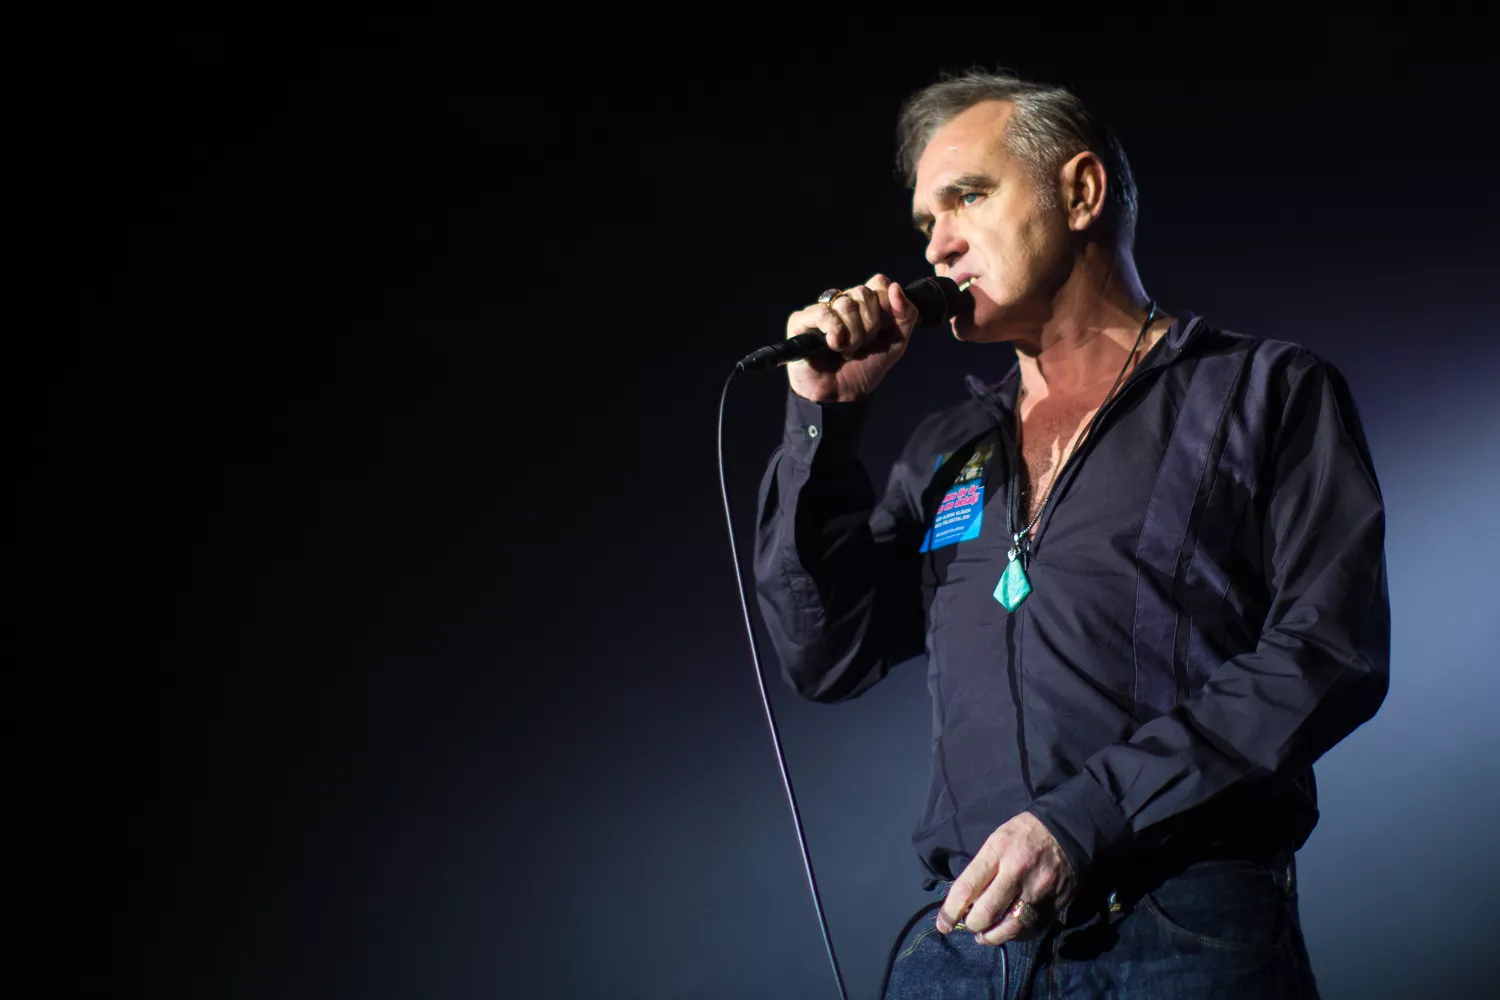 Morrissey stopper koncert, efter fans stormer op på scenen